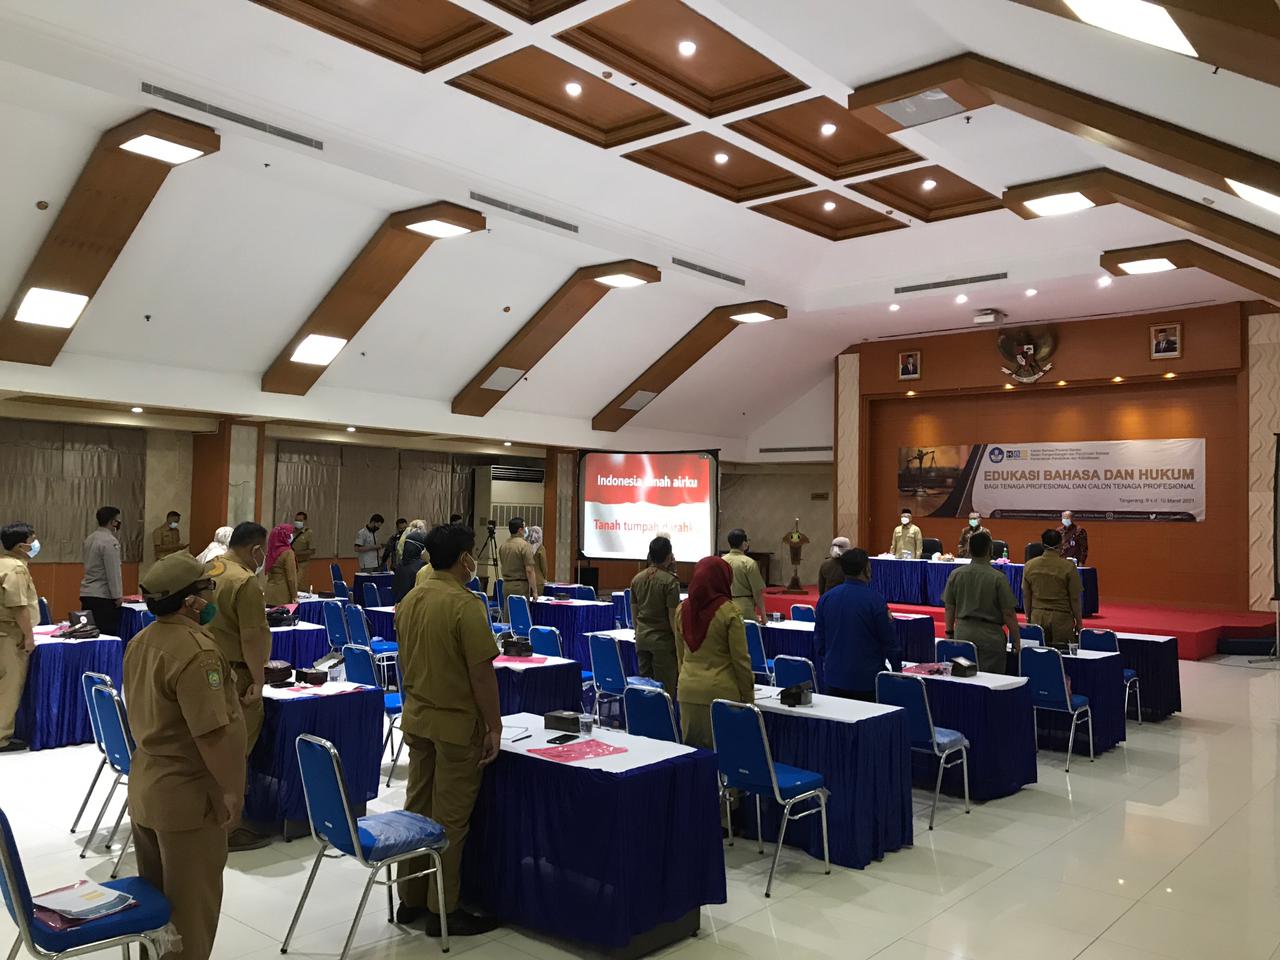 Edukasi Bahasa & Hukum Bagi Tenaga Profesional Oleh Kantor Bahasa Provinsi Banten